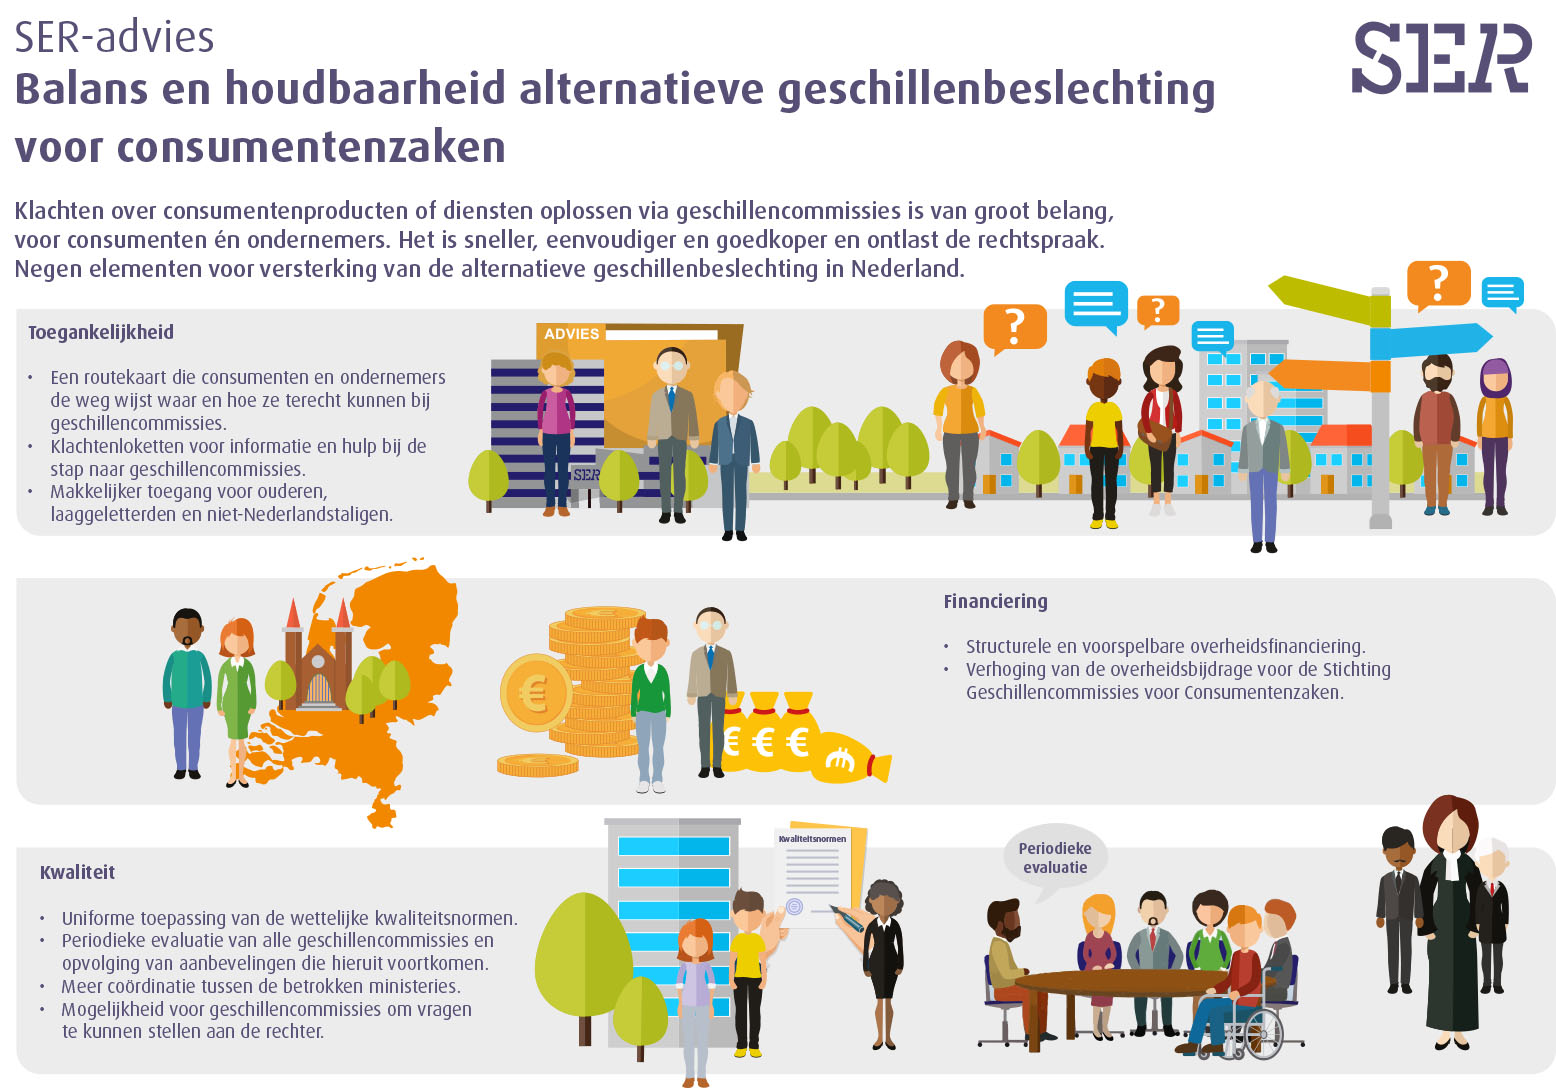 Infograhpic SER-advies Balans en houdbaarheid alternatieve geschillenbeslechting voor consumentenzaken